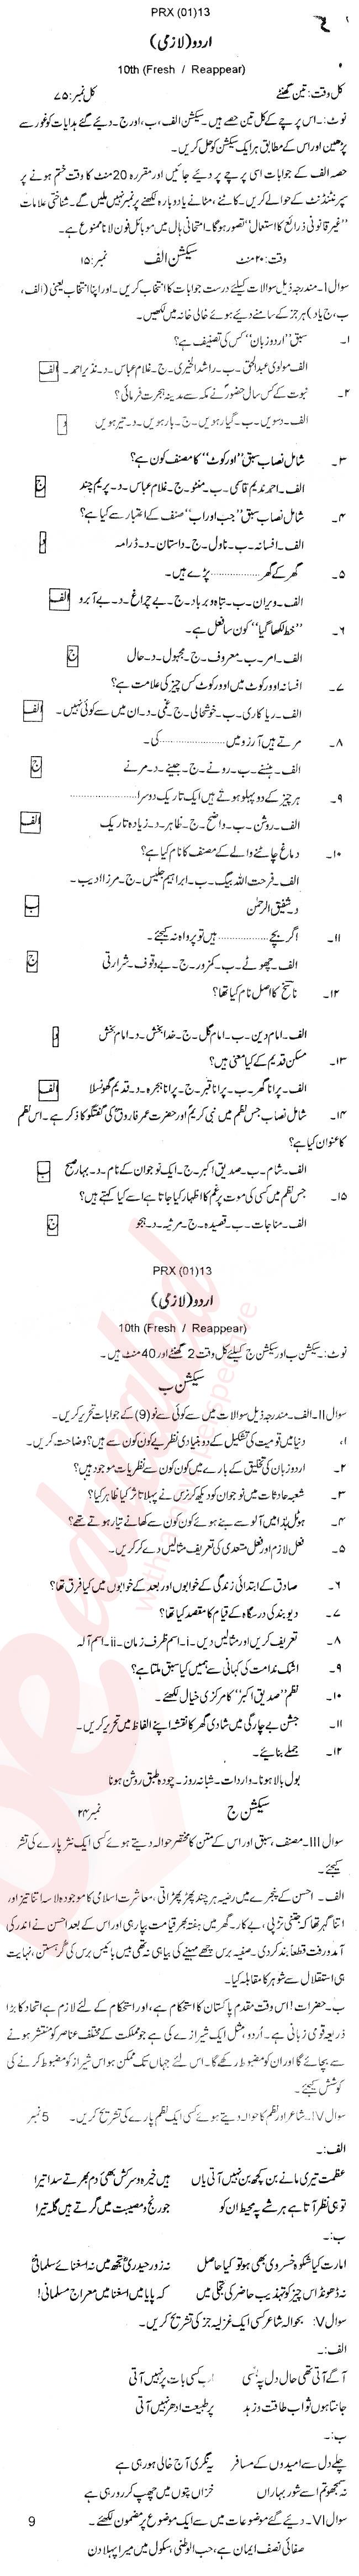 Urdu 10th Urdu Medium Past Paper Group 1 BISE Swat 2013